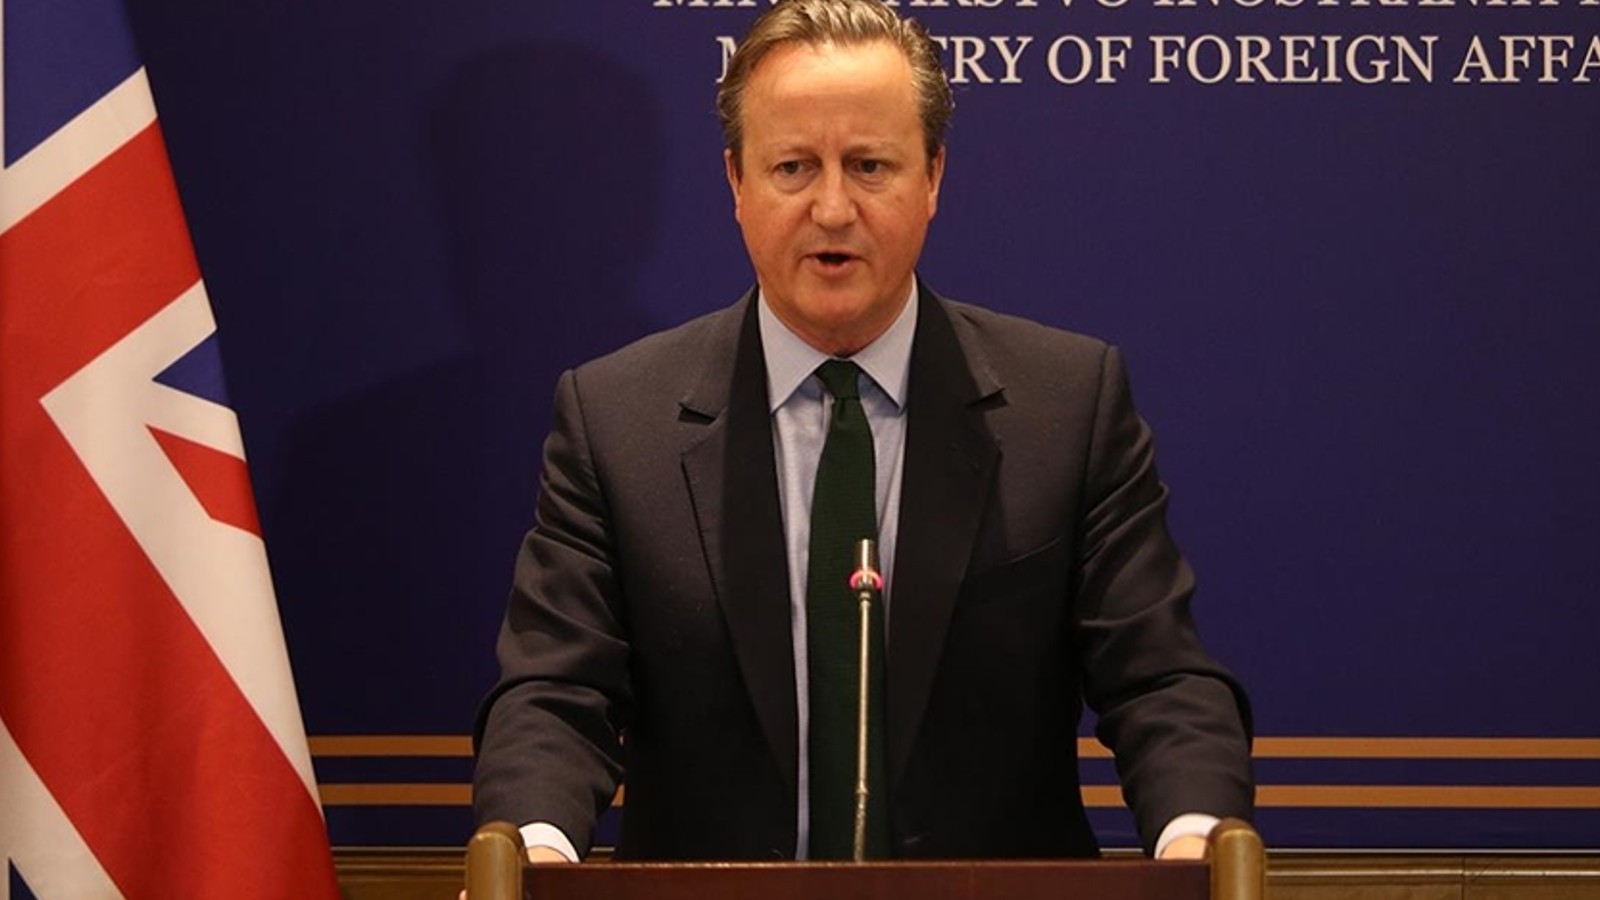 İngiliz Bakan Cameron, “İsrail’in uluslararası hukuku ihlal etmiş olabileceğini” söyledi